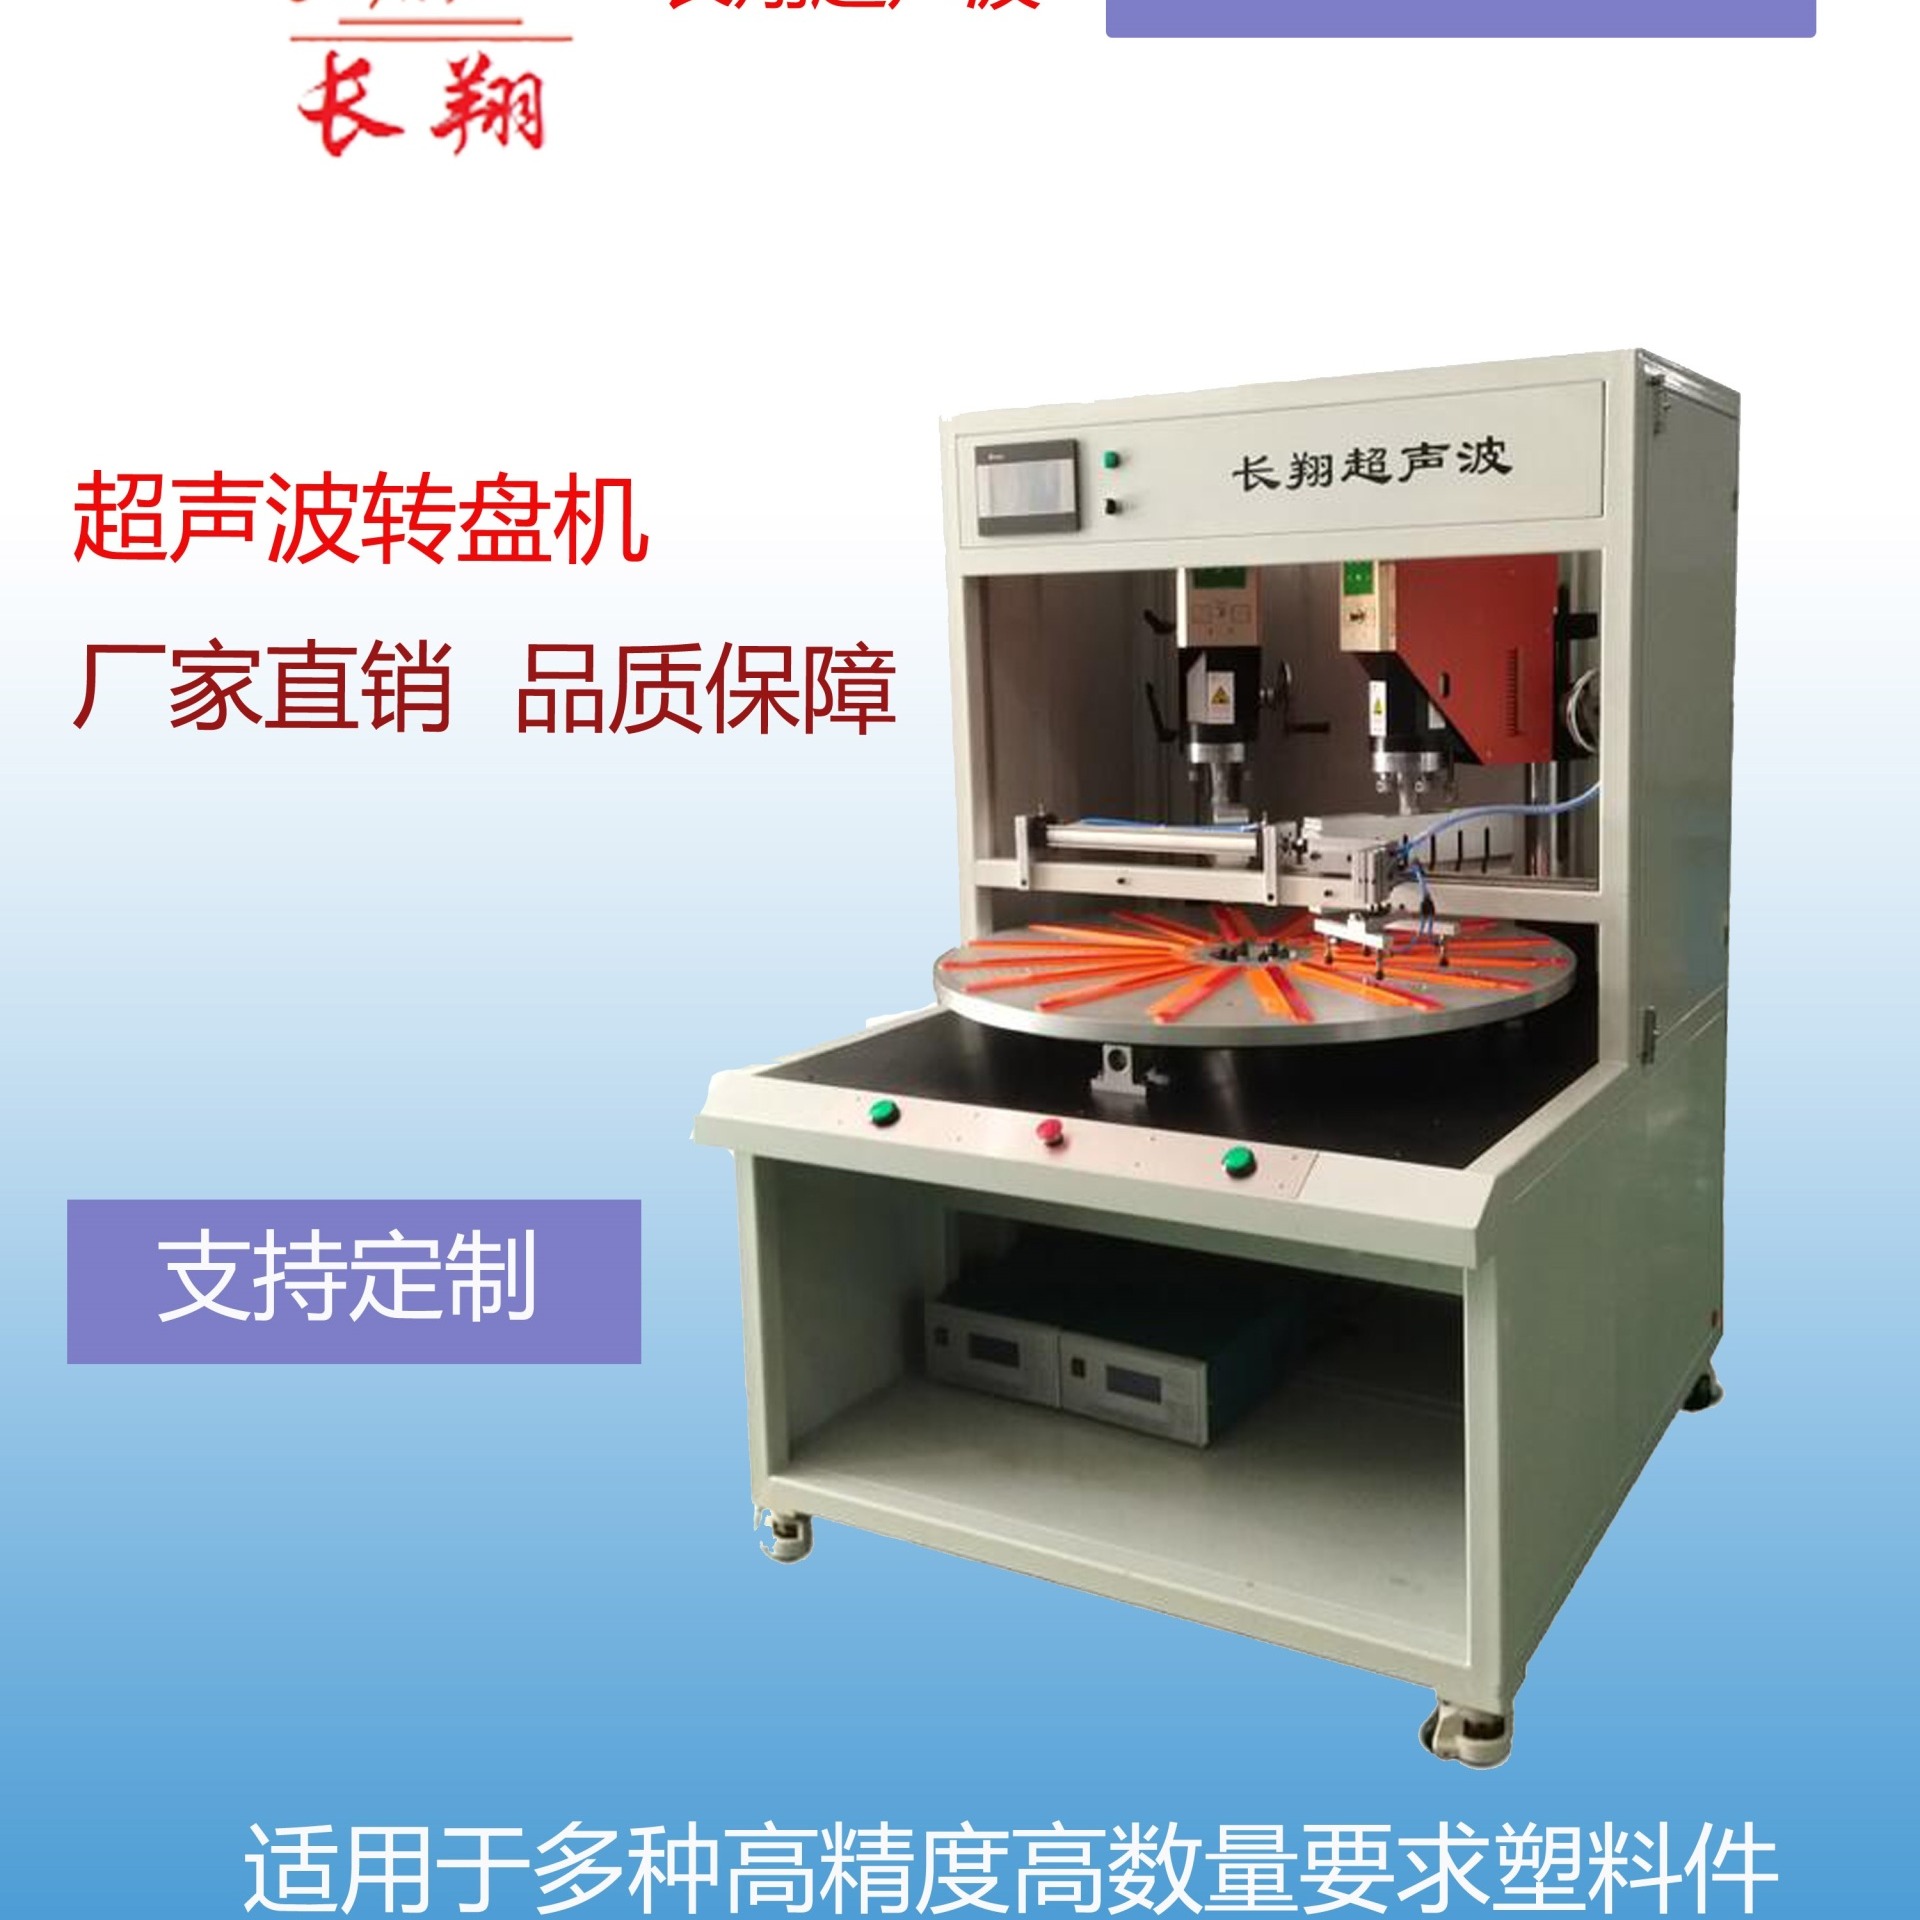 全自动化超声波焊接设备16工位转盘式超声波焊接机